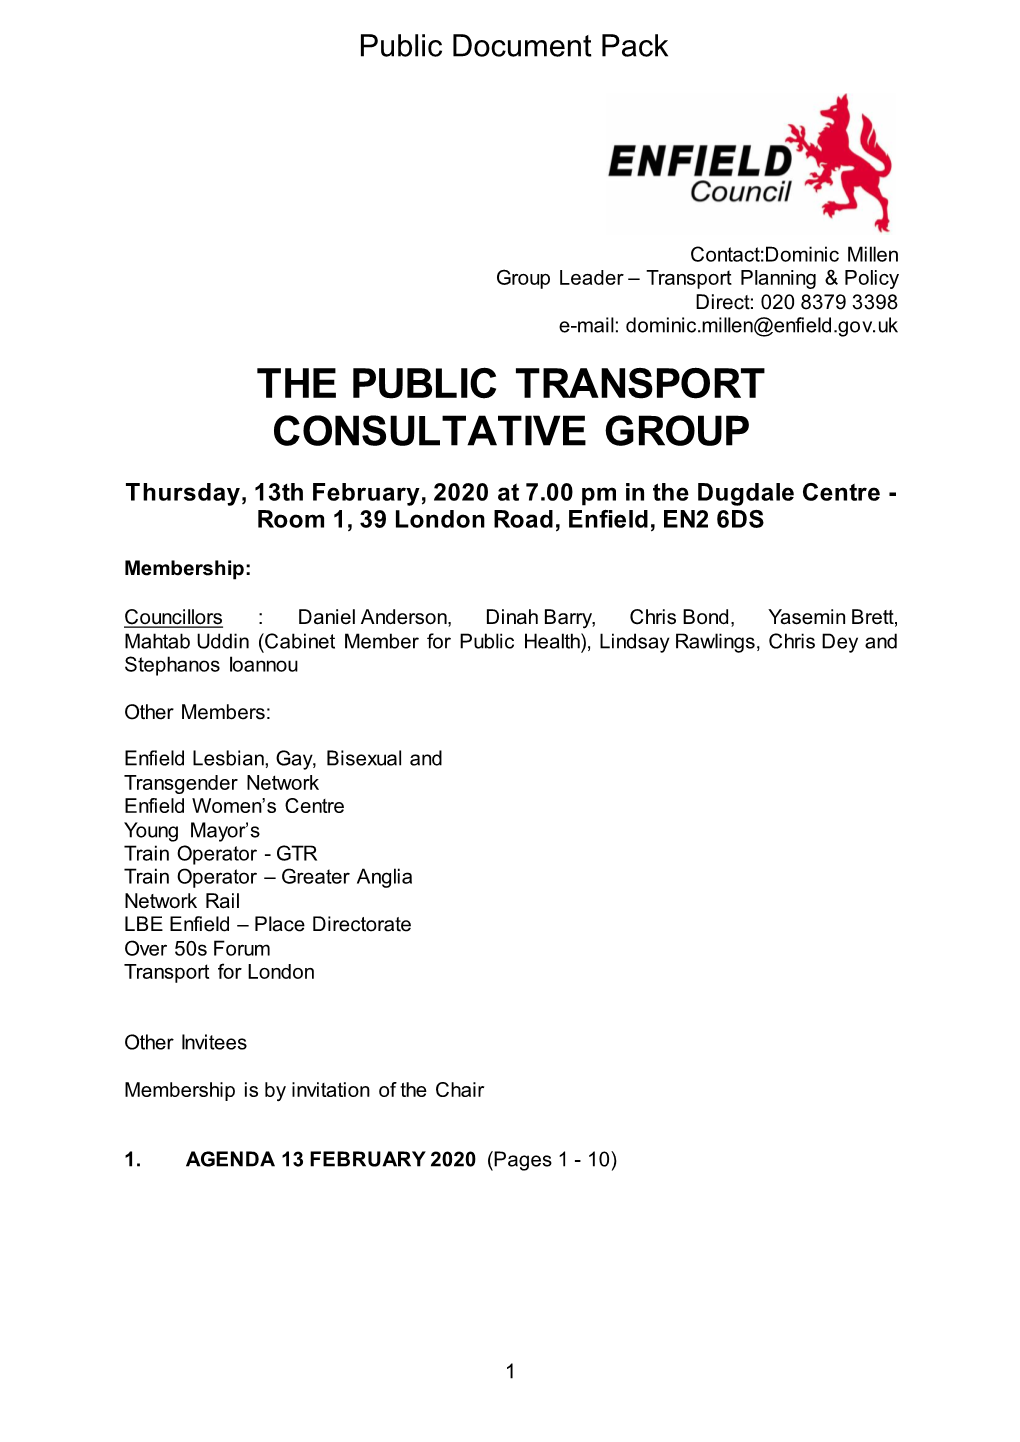 (Public Pack)Agenda Document for Public Transport Consultative